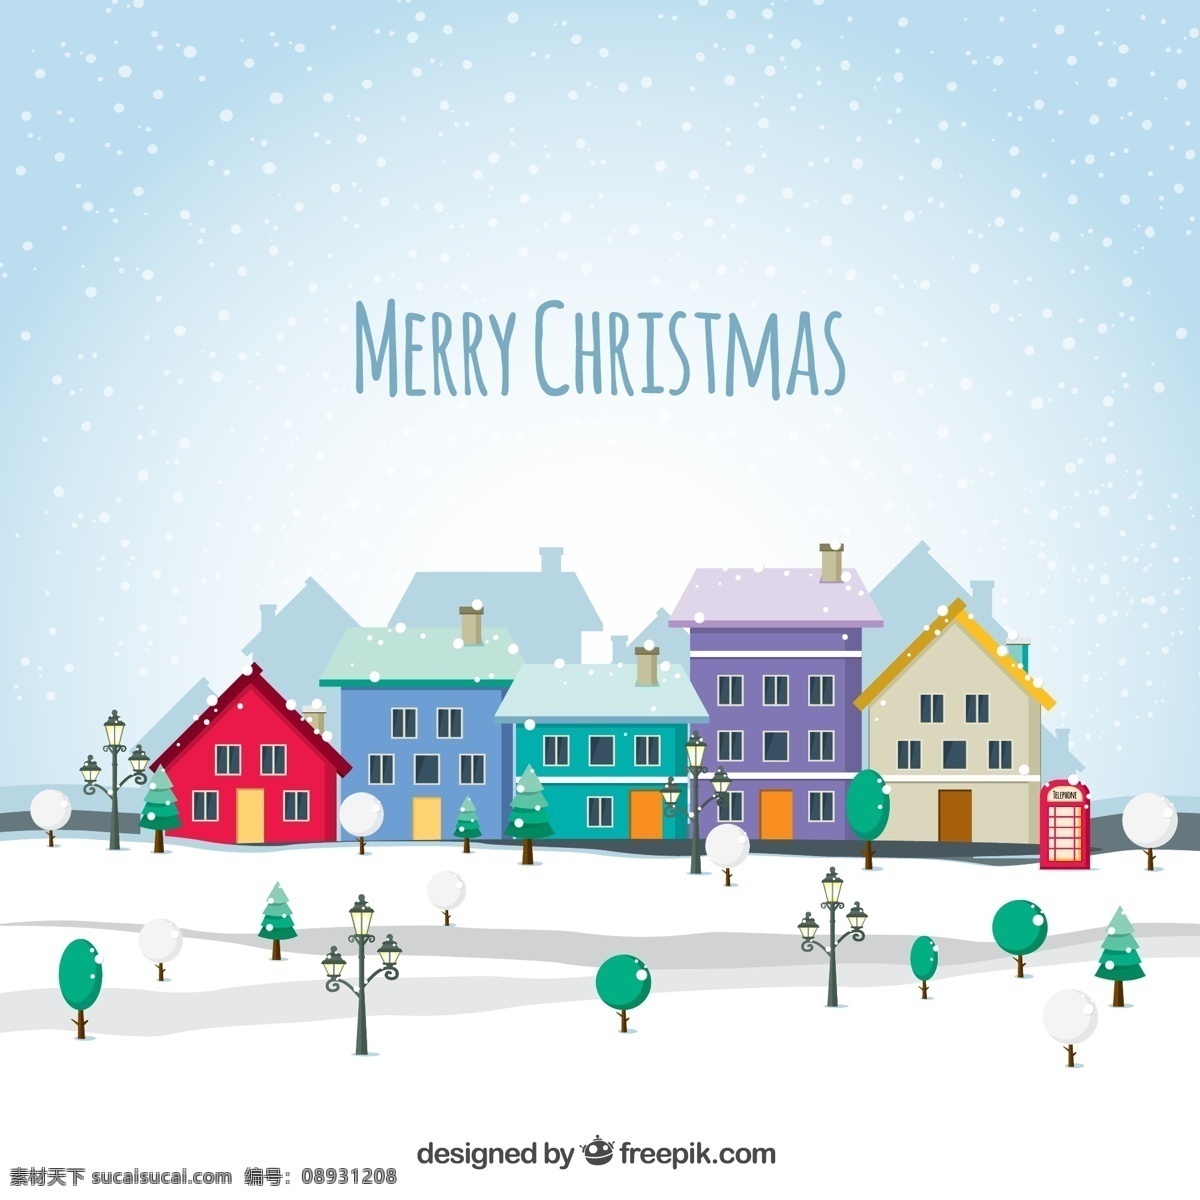 雪 中 圣诞 小镇 矢量 雪花 圣诞节 树木 路灯 城市 建筑 merry chistmas 矢量图 白色